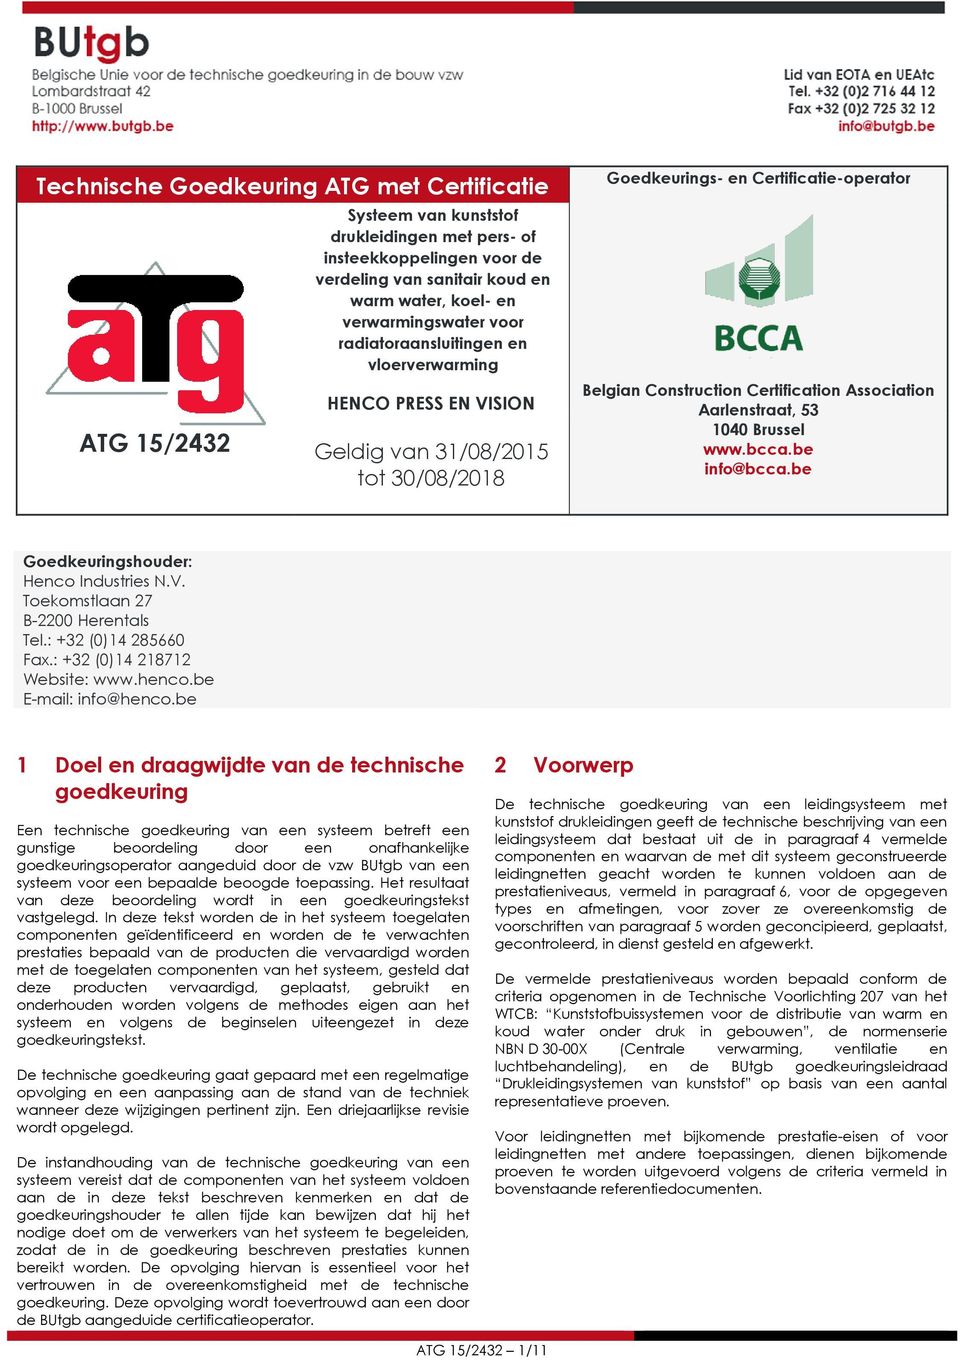 Association Aarlenstraat, 53 1040 Brussel www.bcca.be info@bcca.be Goedkeuringshouder: Henco Industries N.V. Toekomstlaan 27 B-2200 Herentals Tel.: +32 (0)14 285660 Fax.